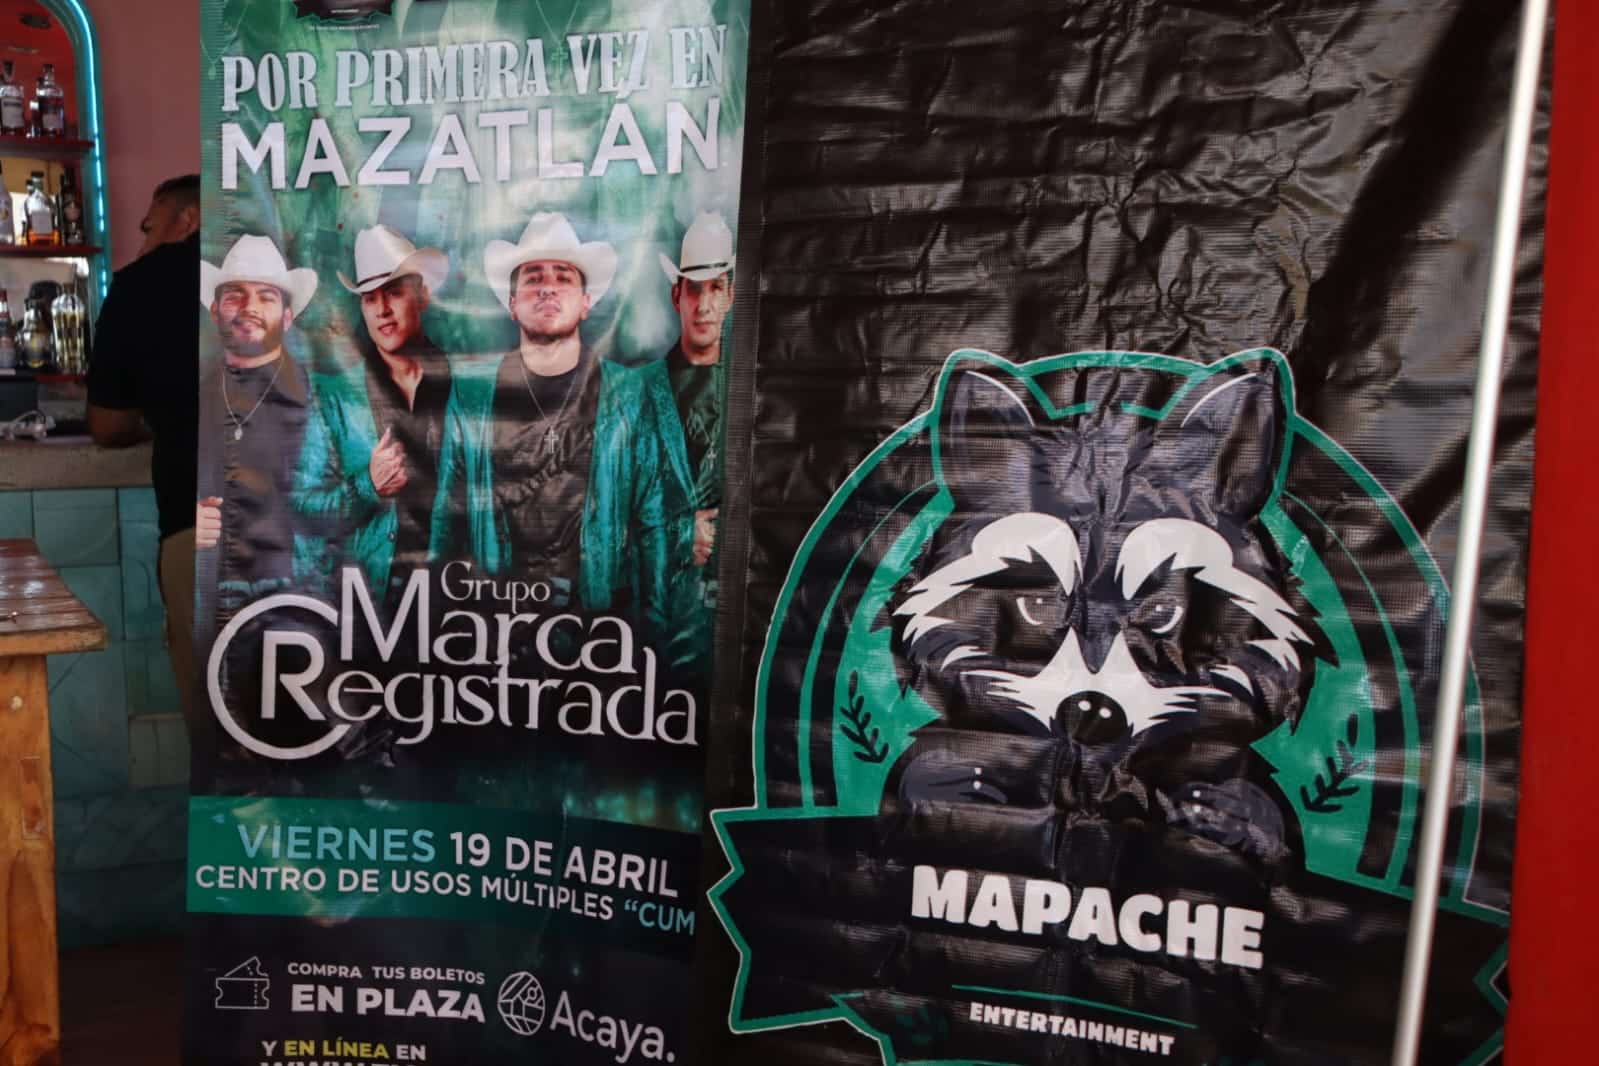 Cartelera que promociona que estará el Grupo Marca Registrada en Mazatlán